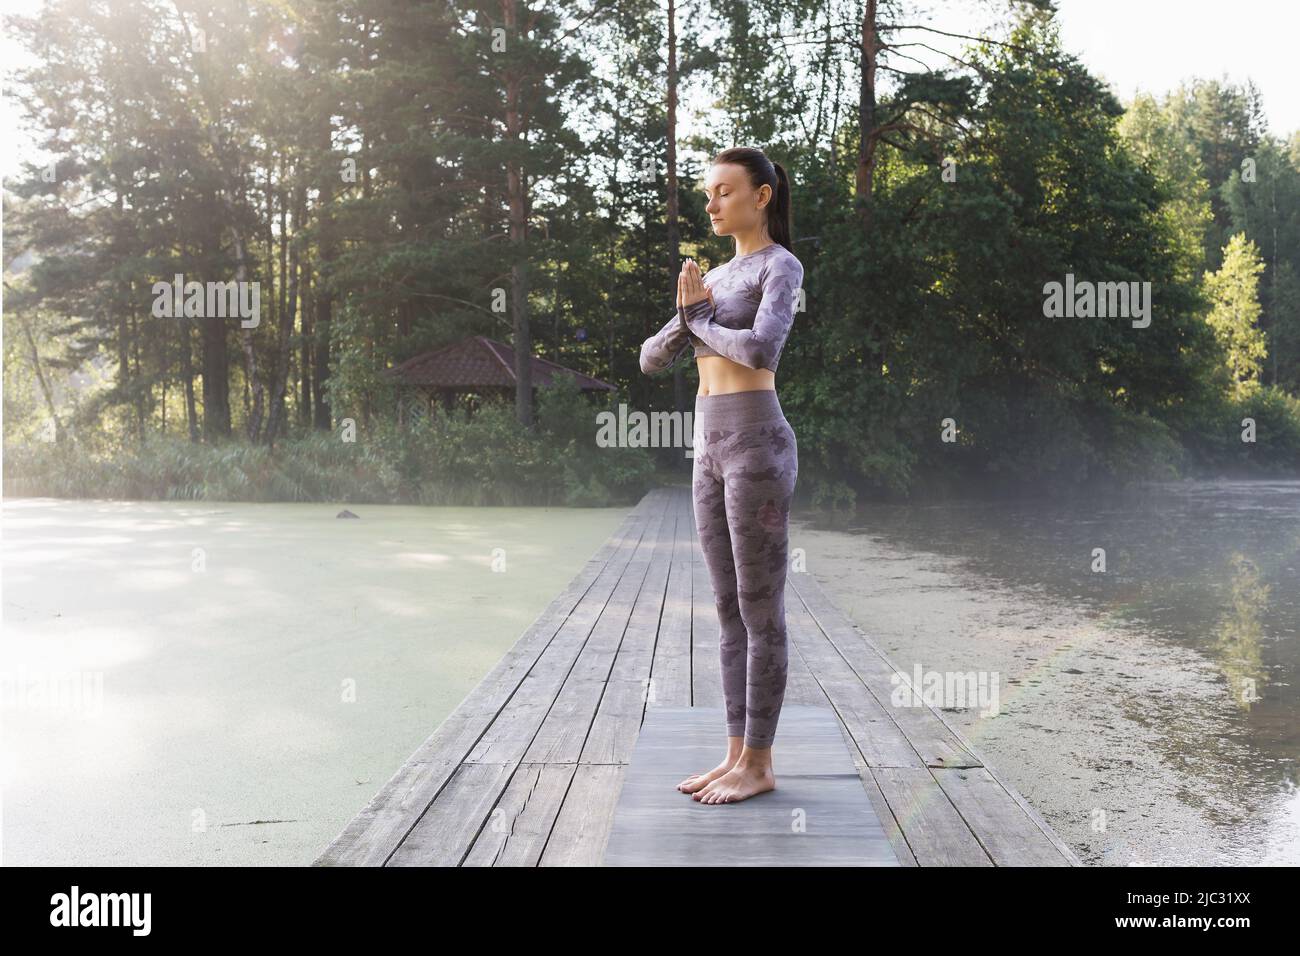 Una mujer practicando yoga, haciendo una variación del ejercicio vrikshasana, pose de árbol con namaste, de pie en un puente de madera en una mañana de verano en el Foto de stock